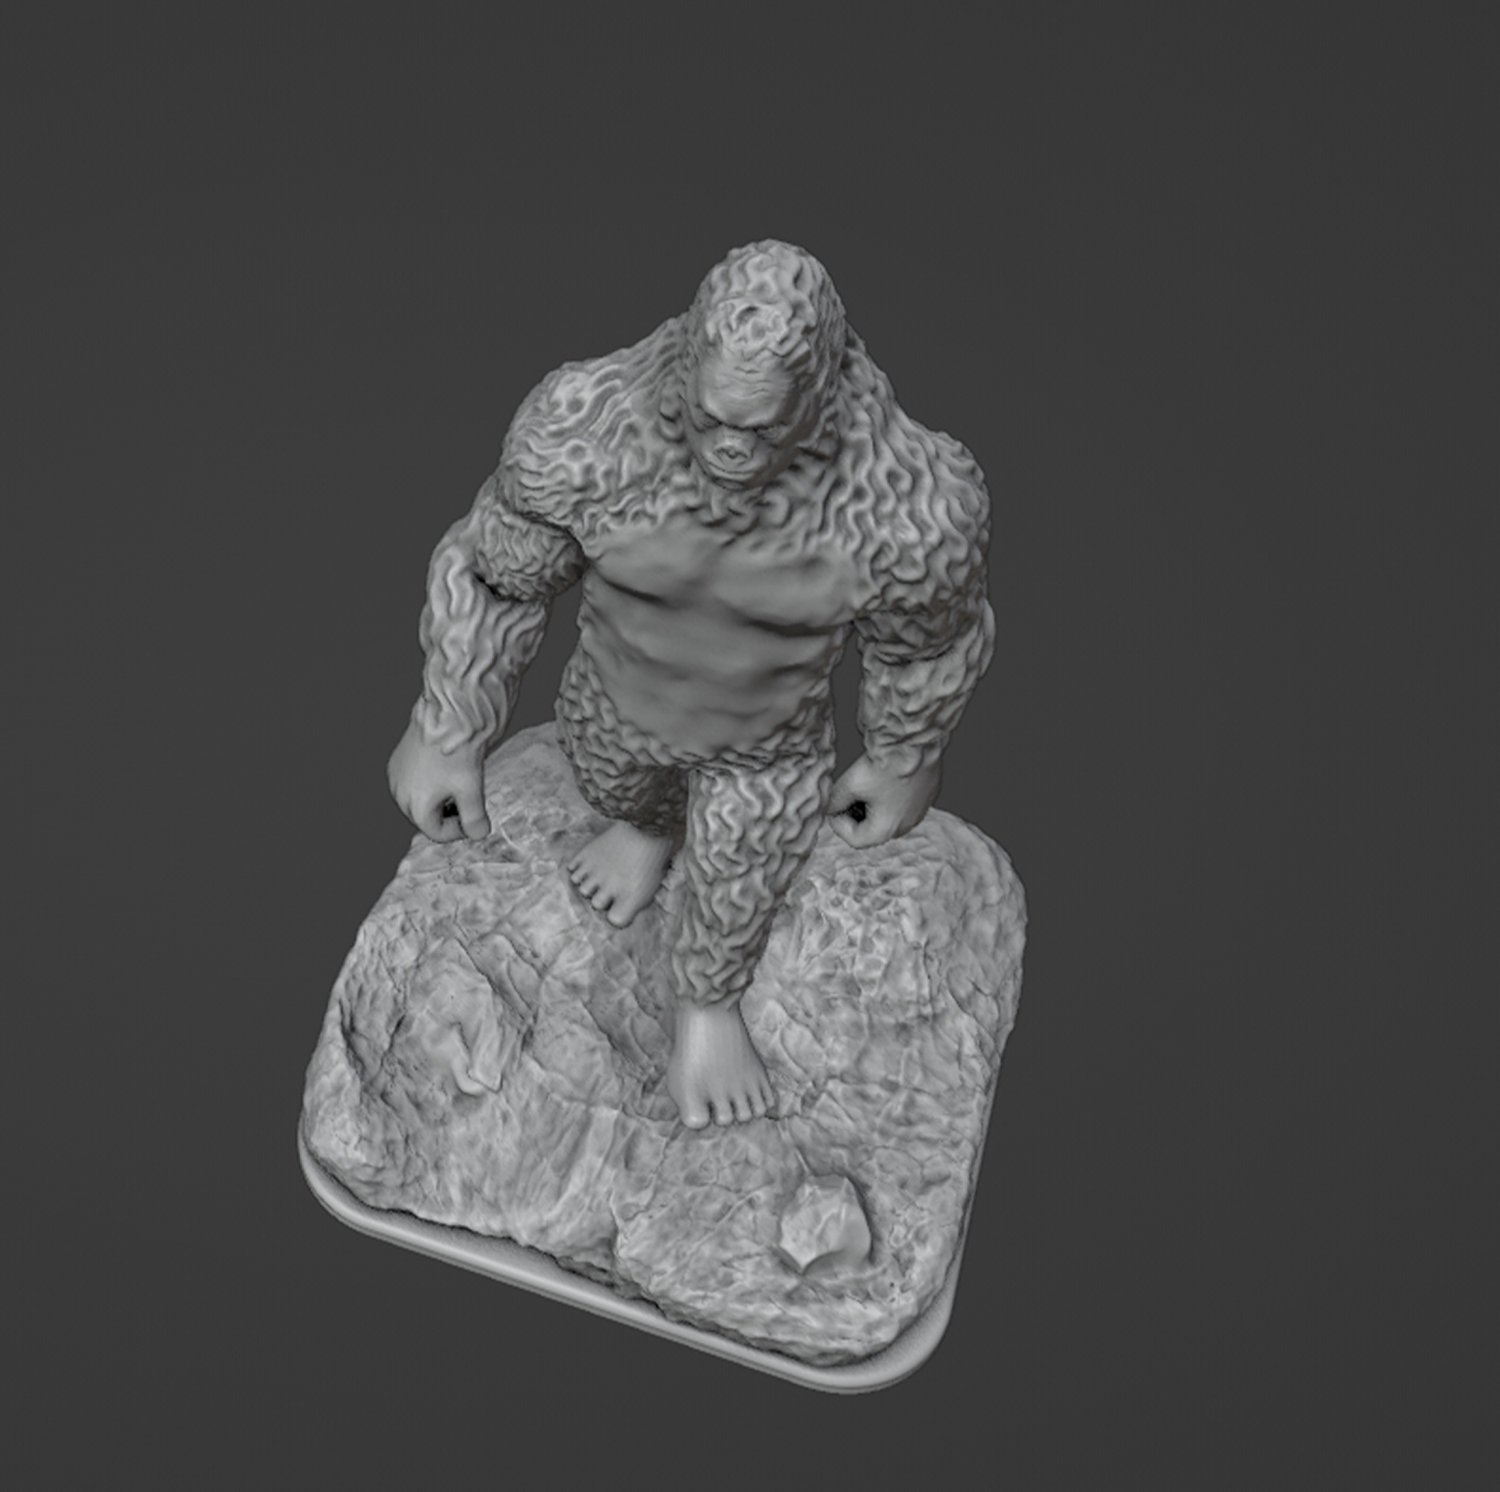 BigFoot Desktop Fan by Dan the 3D Printing Dad, Download free STL model